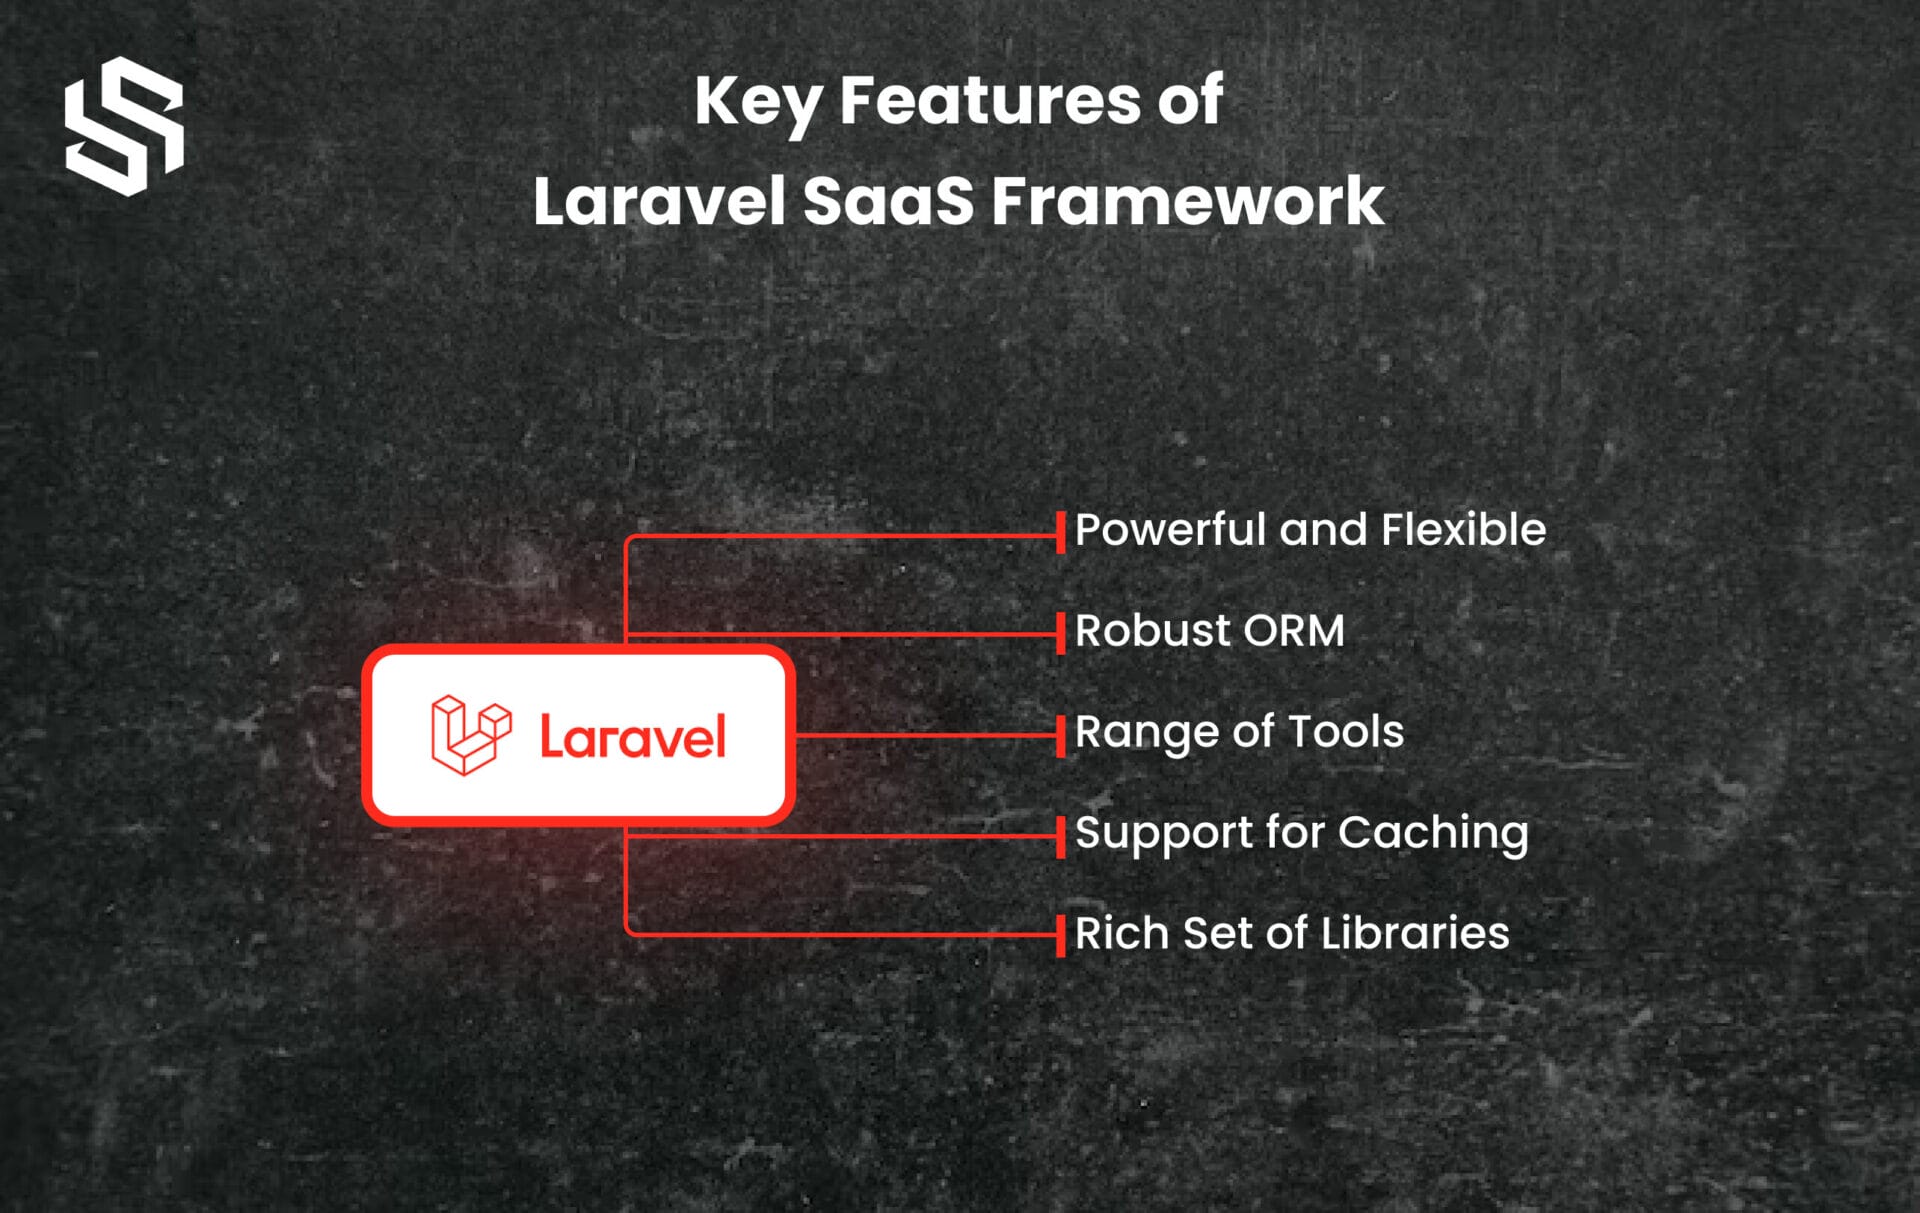 Key Features of Laravel Framework